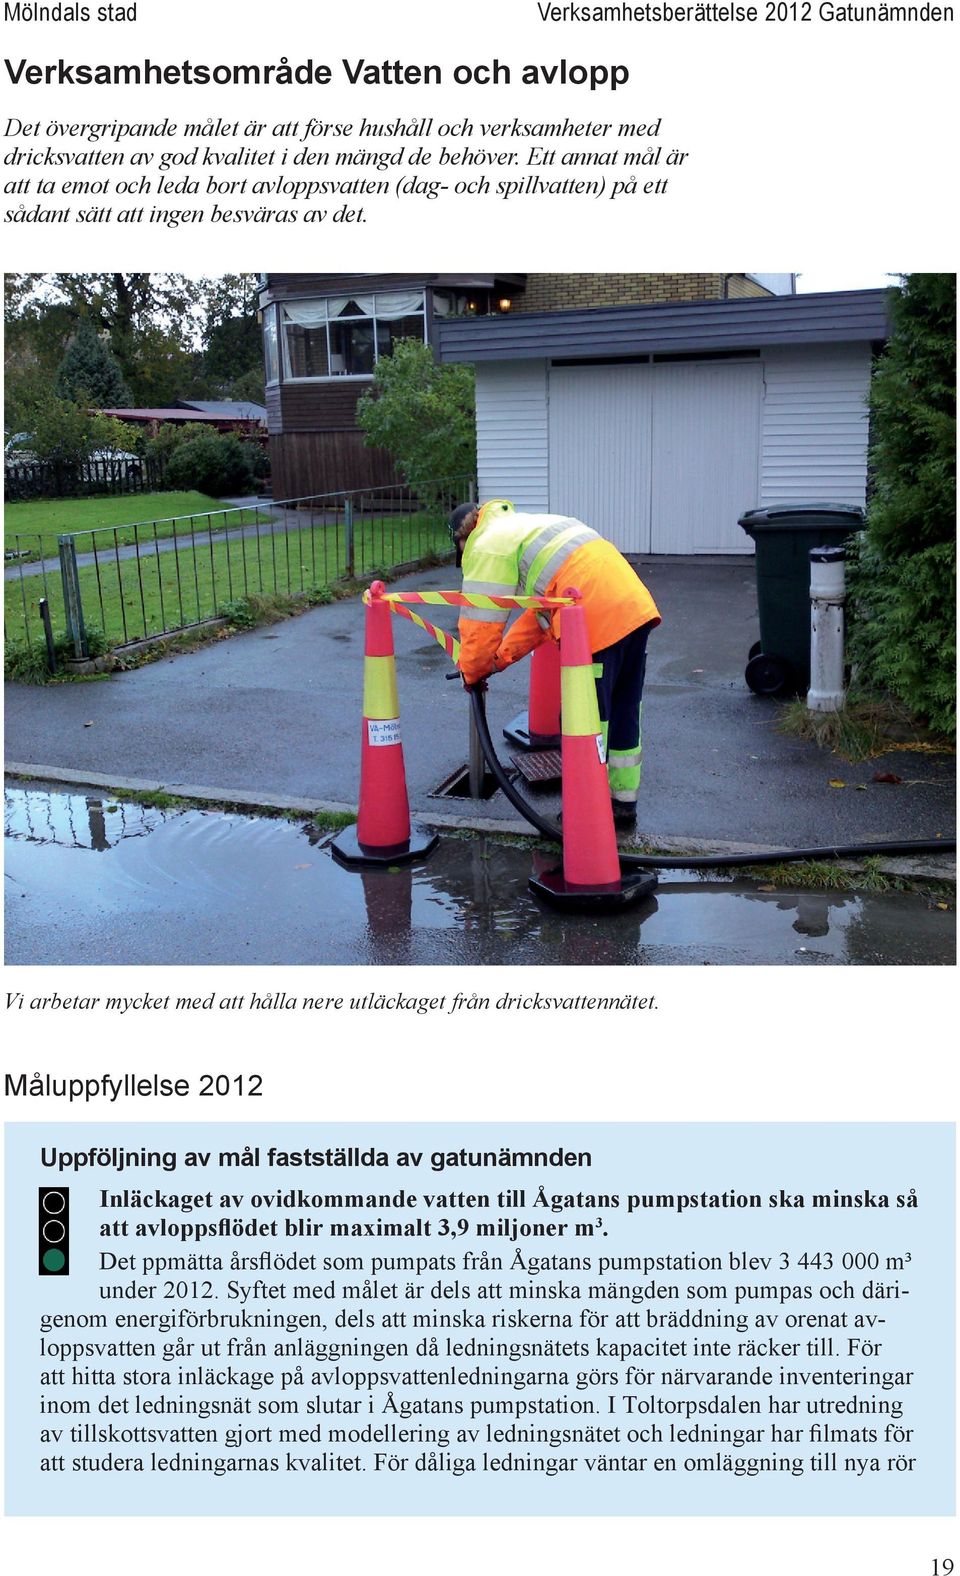 Måluppfyllelse 2012 Uppföljning av mål fastställda av gatunämnden Inläckaget av ovidkommande vatten till Ågatans pumpstation ska minska så att avloppsflödet blir maximalt 3,9 miljoner m3.